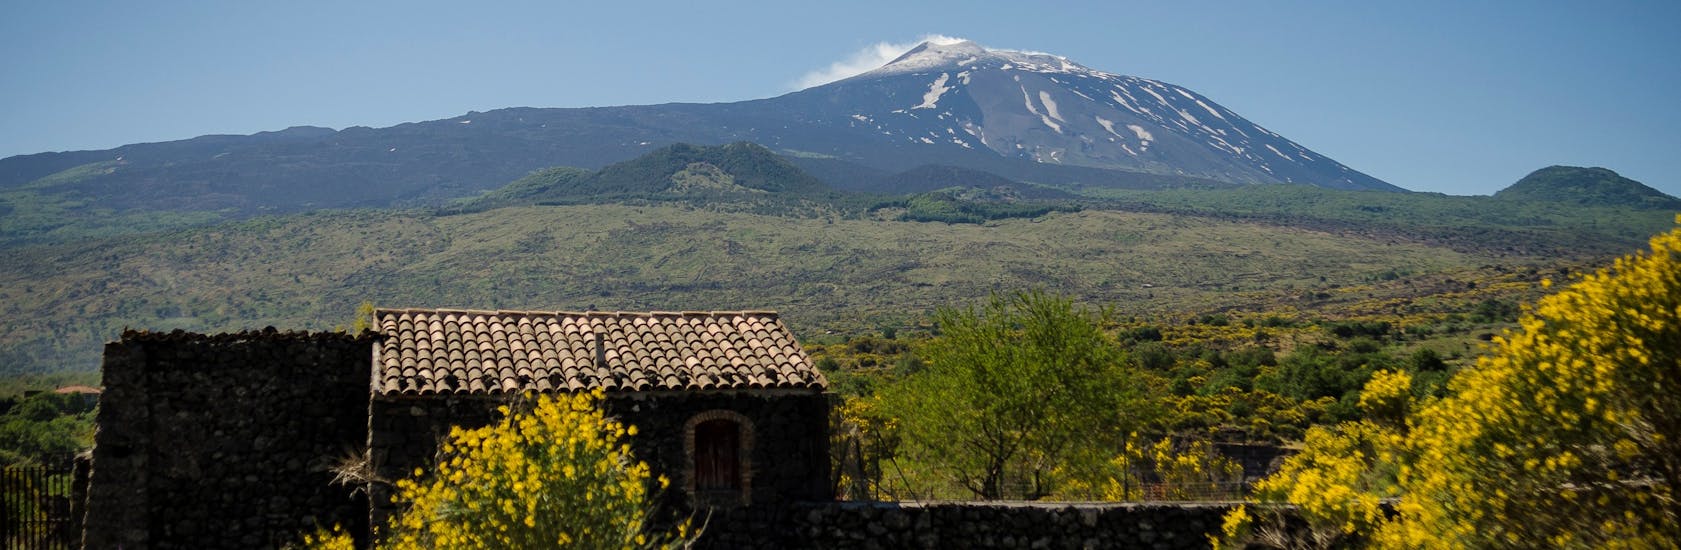 Una casa sul versante nord dell'Etna durante l'Escursione all'Etna, Randazzo e alle Gole dell'Alcantara con SAT Excursion Taormina.